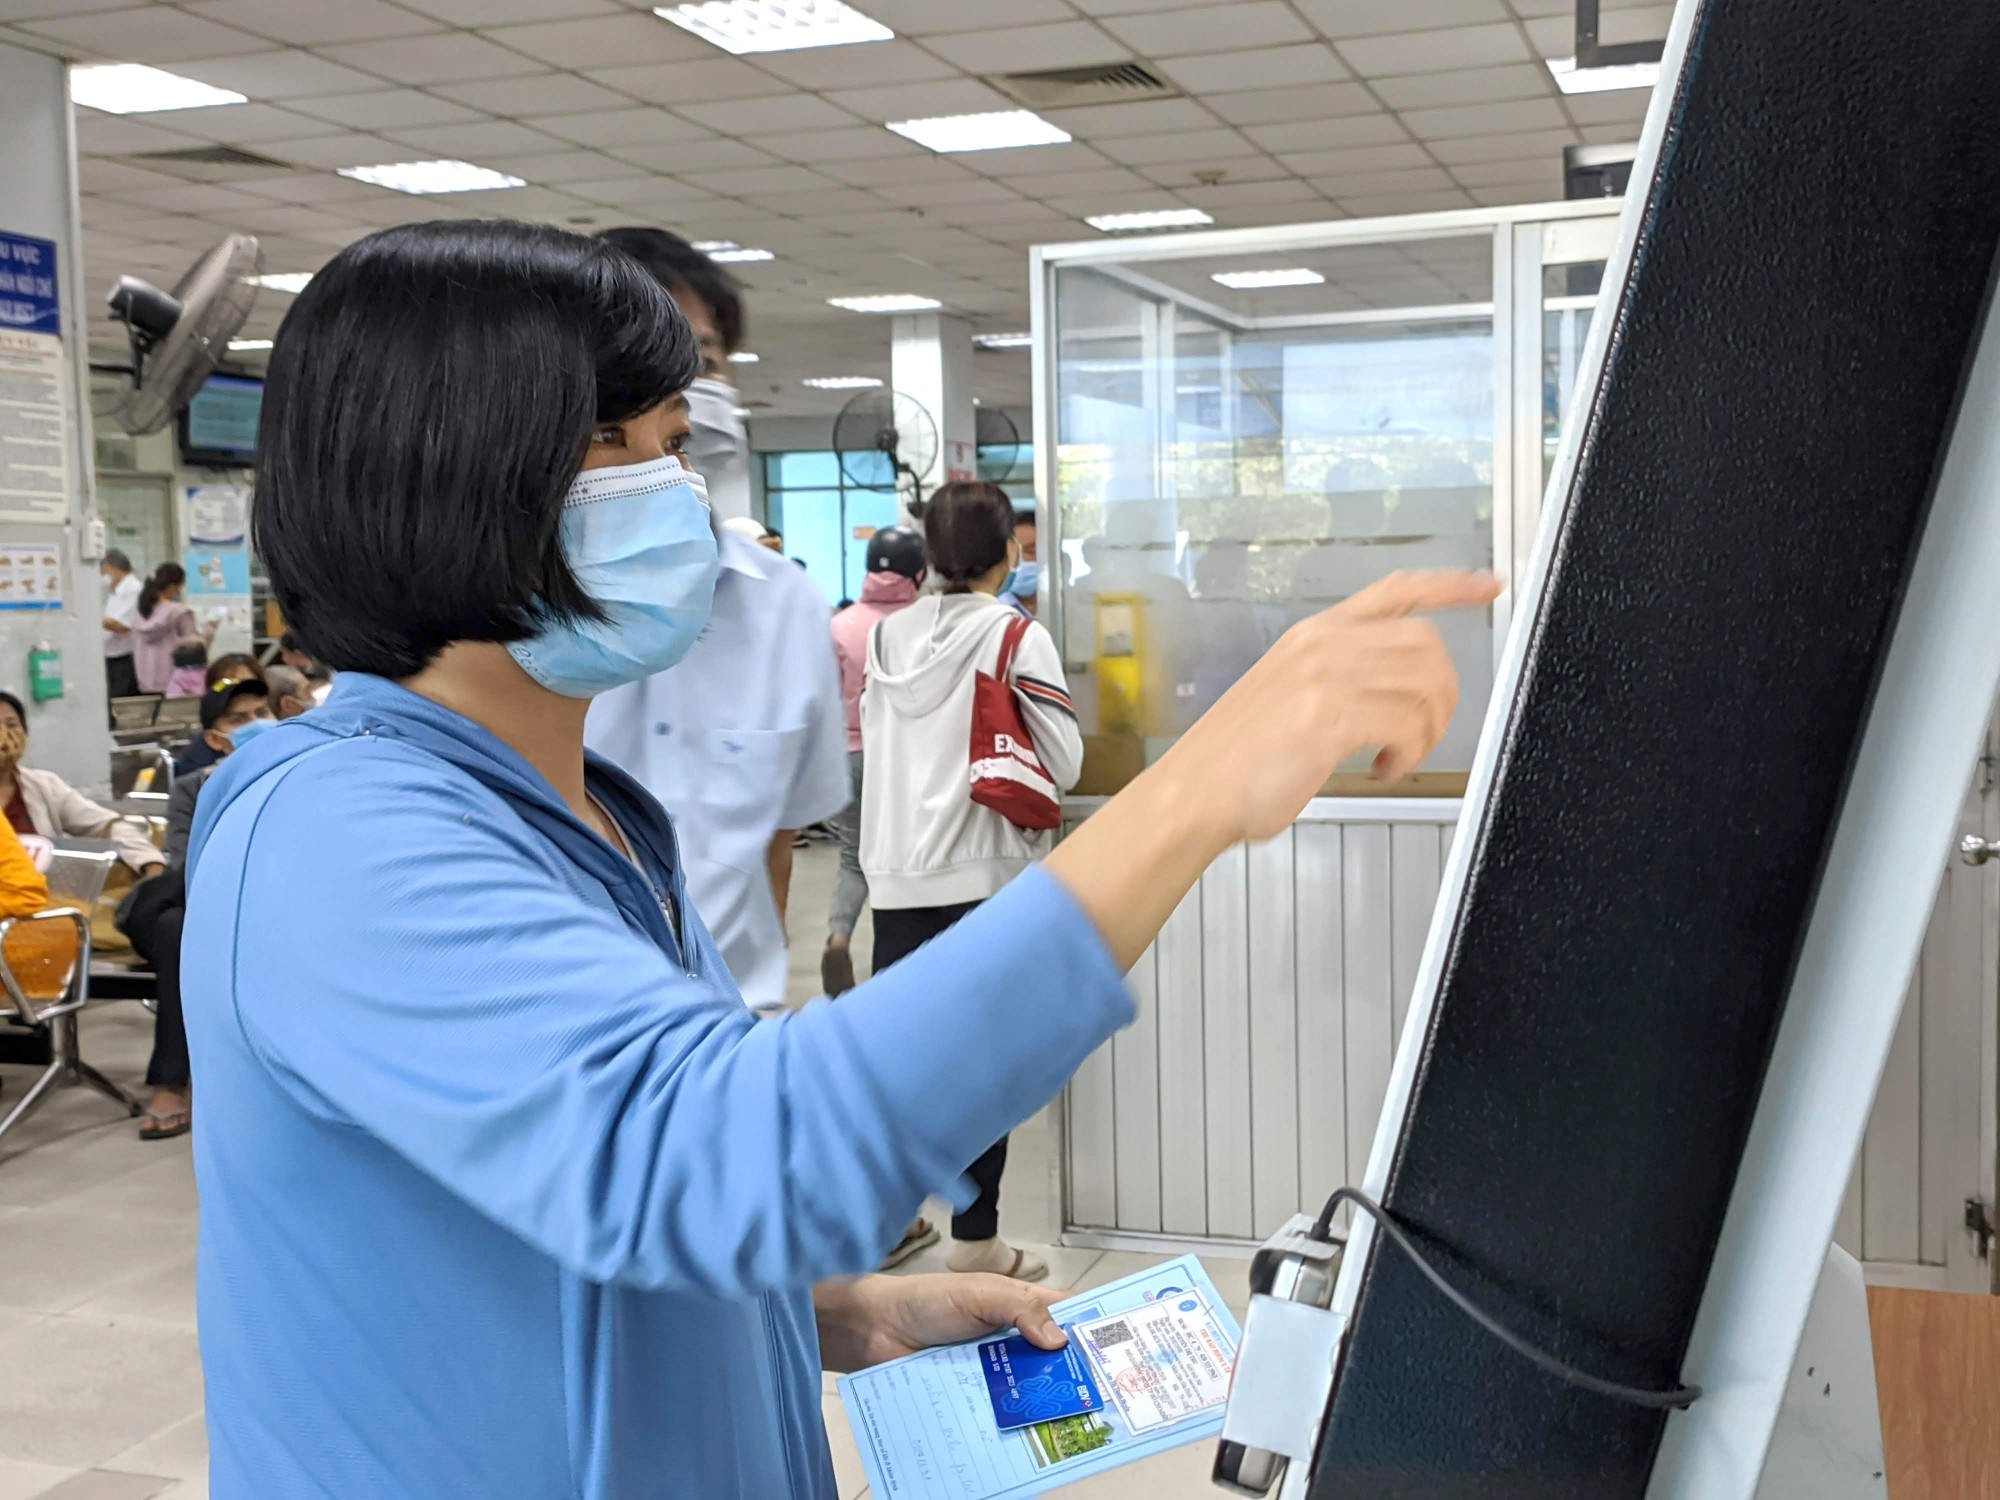 Đăng ký khám bệnh qua hệ thống máy móc tại Bệnh viện nhân dân Gia Định